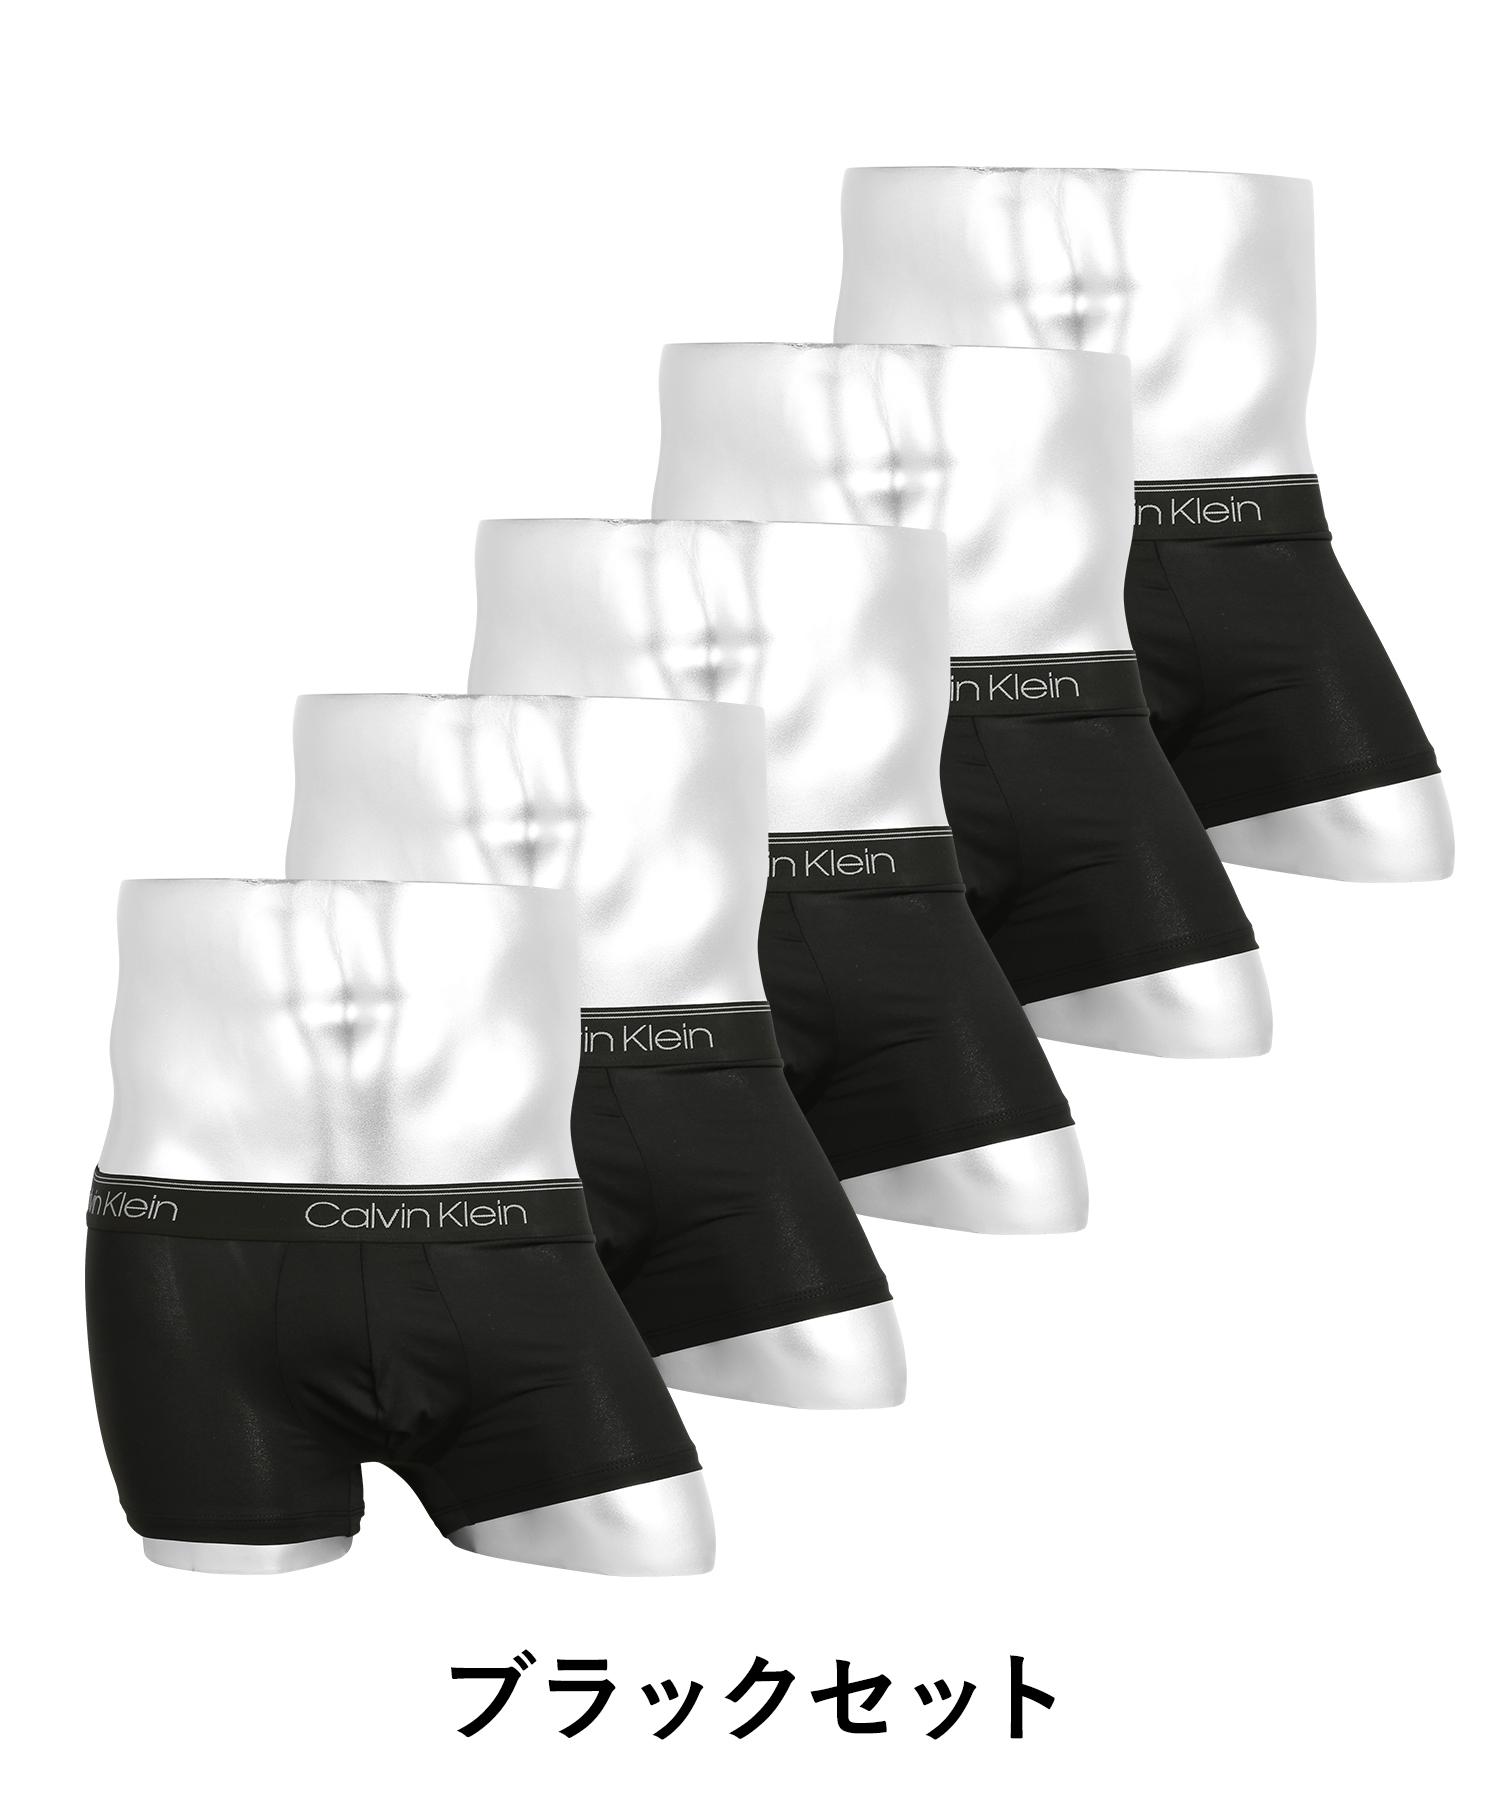 カルバンクライン Calvin Klein ボクサーパンツ 5枚セット メンズ アンダーウェア 男性下着 ツルツル 速乾 CK ロゴ 高級 ハイブランド